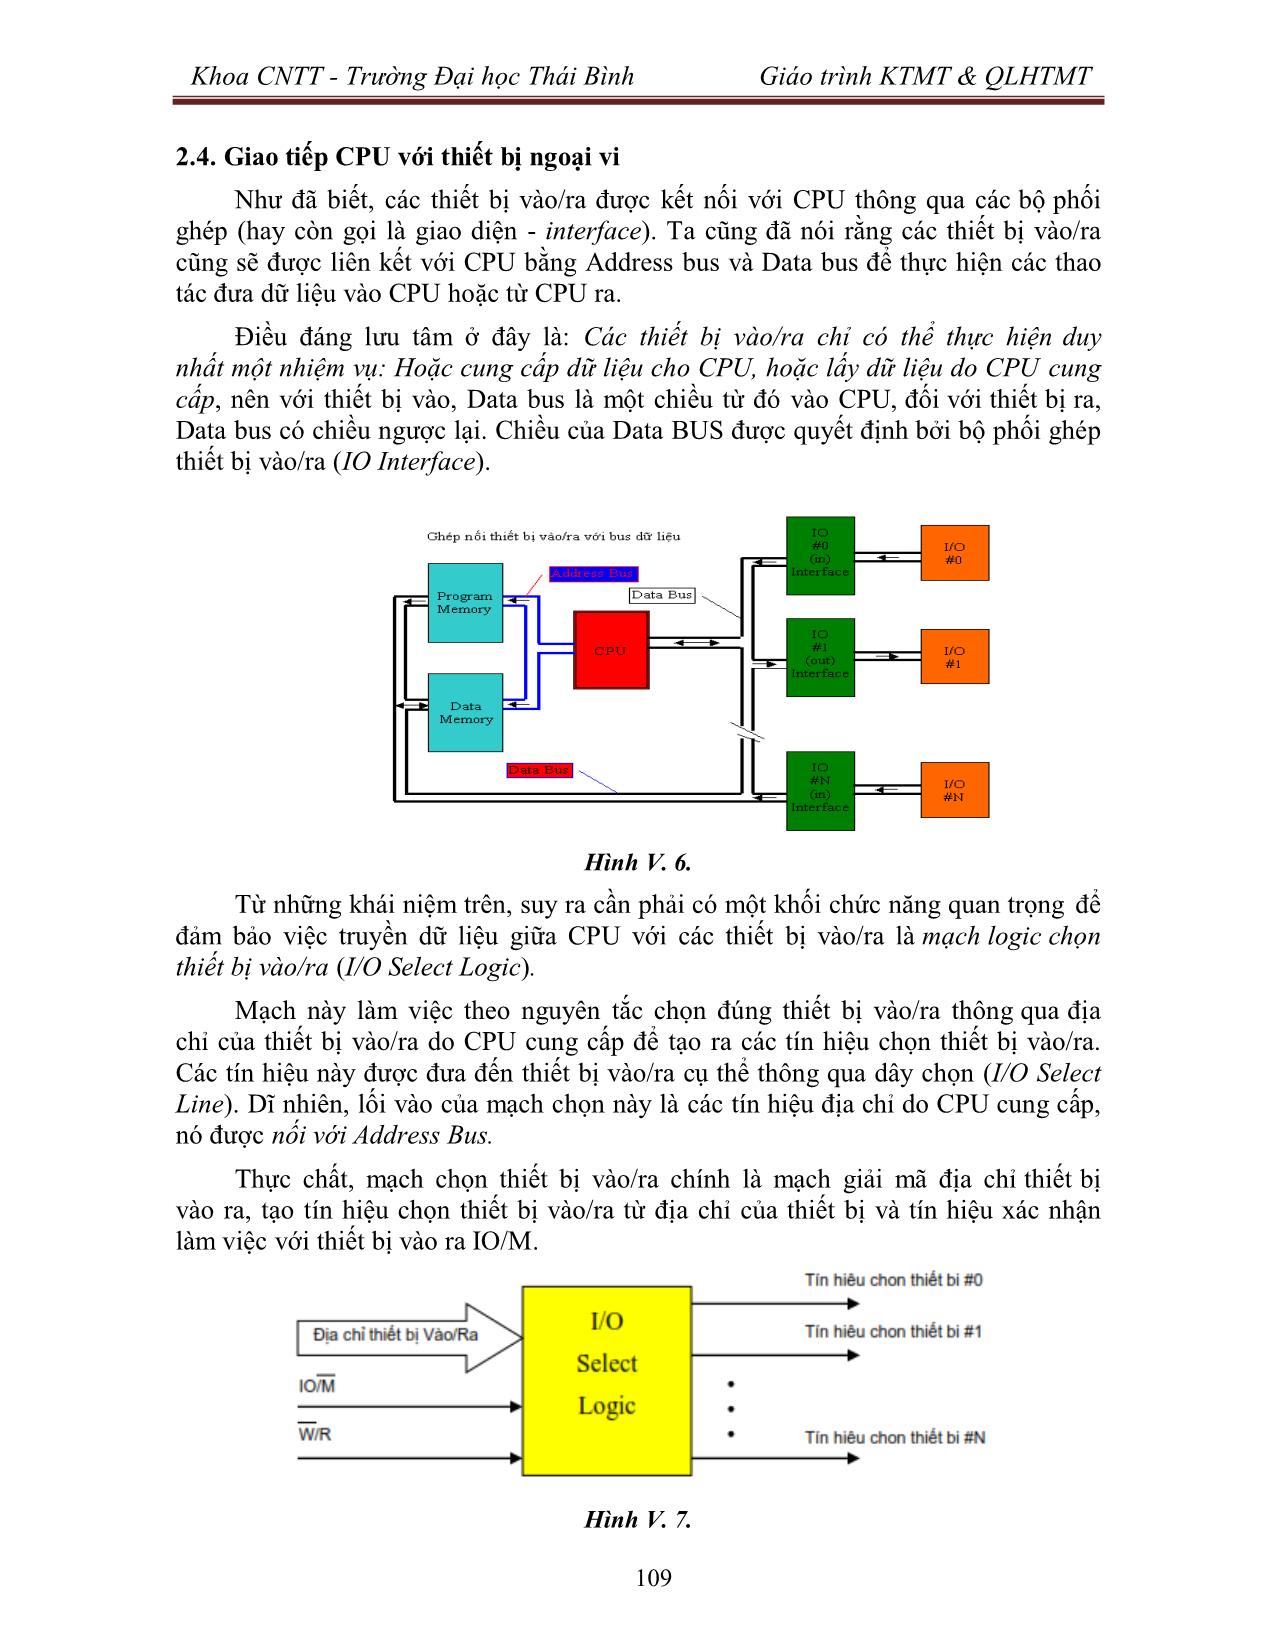 Giáo trình Kiến trúc máy tính & Quản lý hệ thống máy tính (Phần 2) trang 6